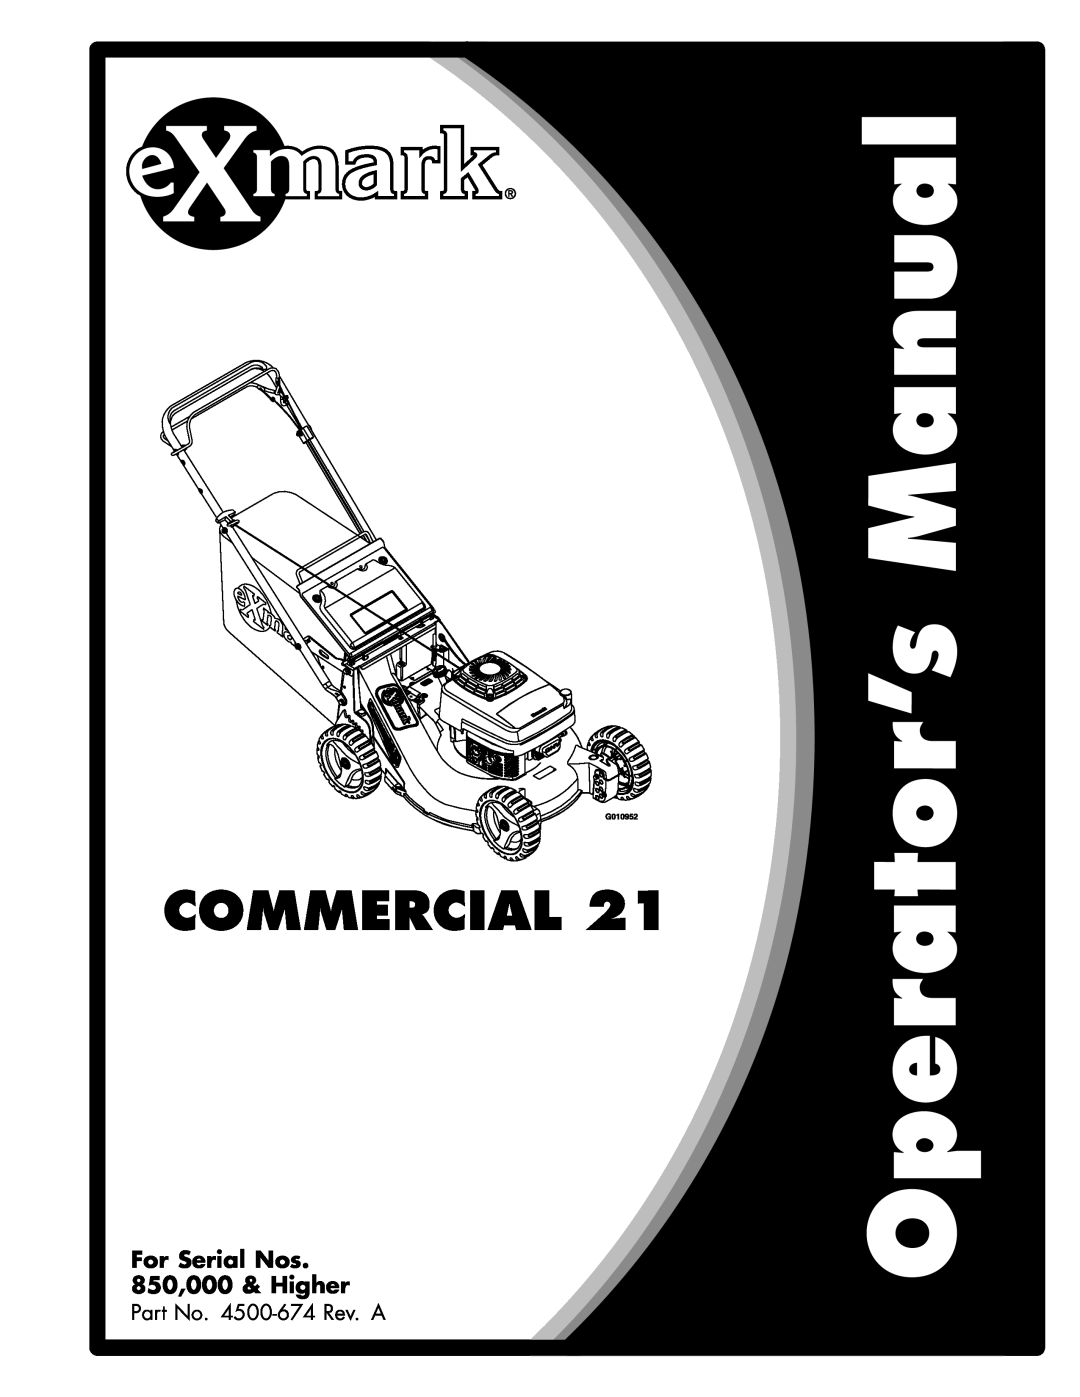 Exmark manual Metro, For Serial Nos 850,000 & Higher, Part No. 4500-534Rev. B 